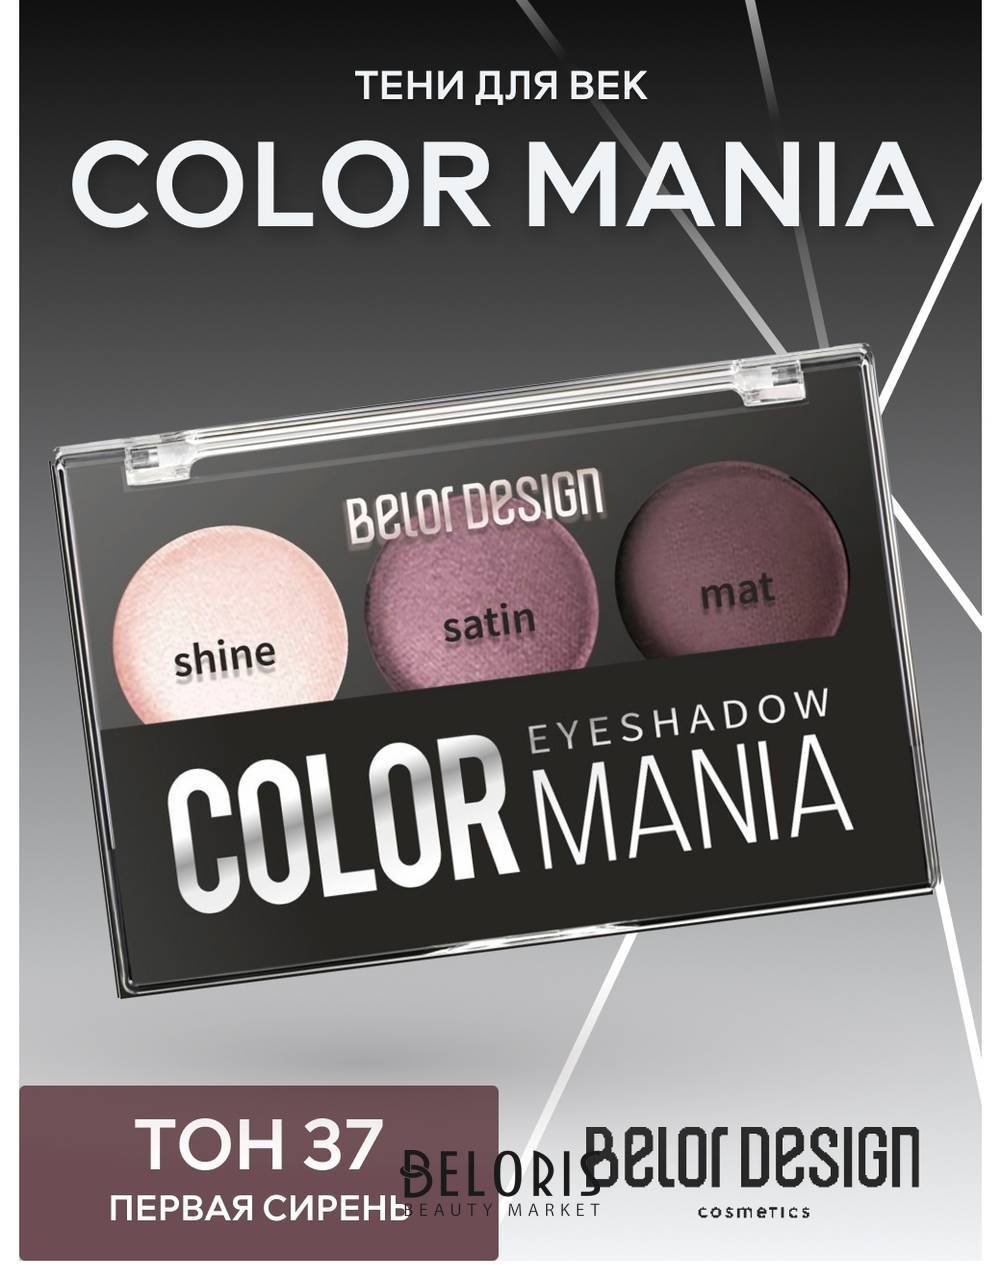 Тени для век Color mania Belor Design